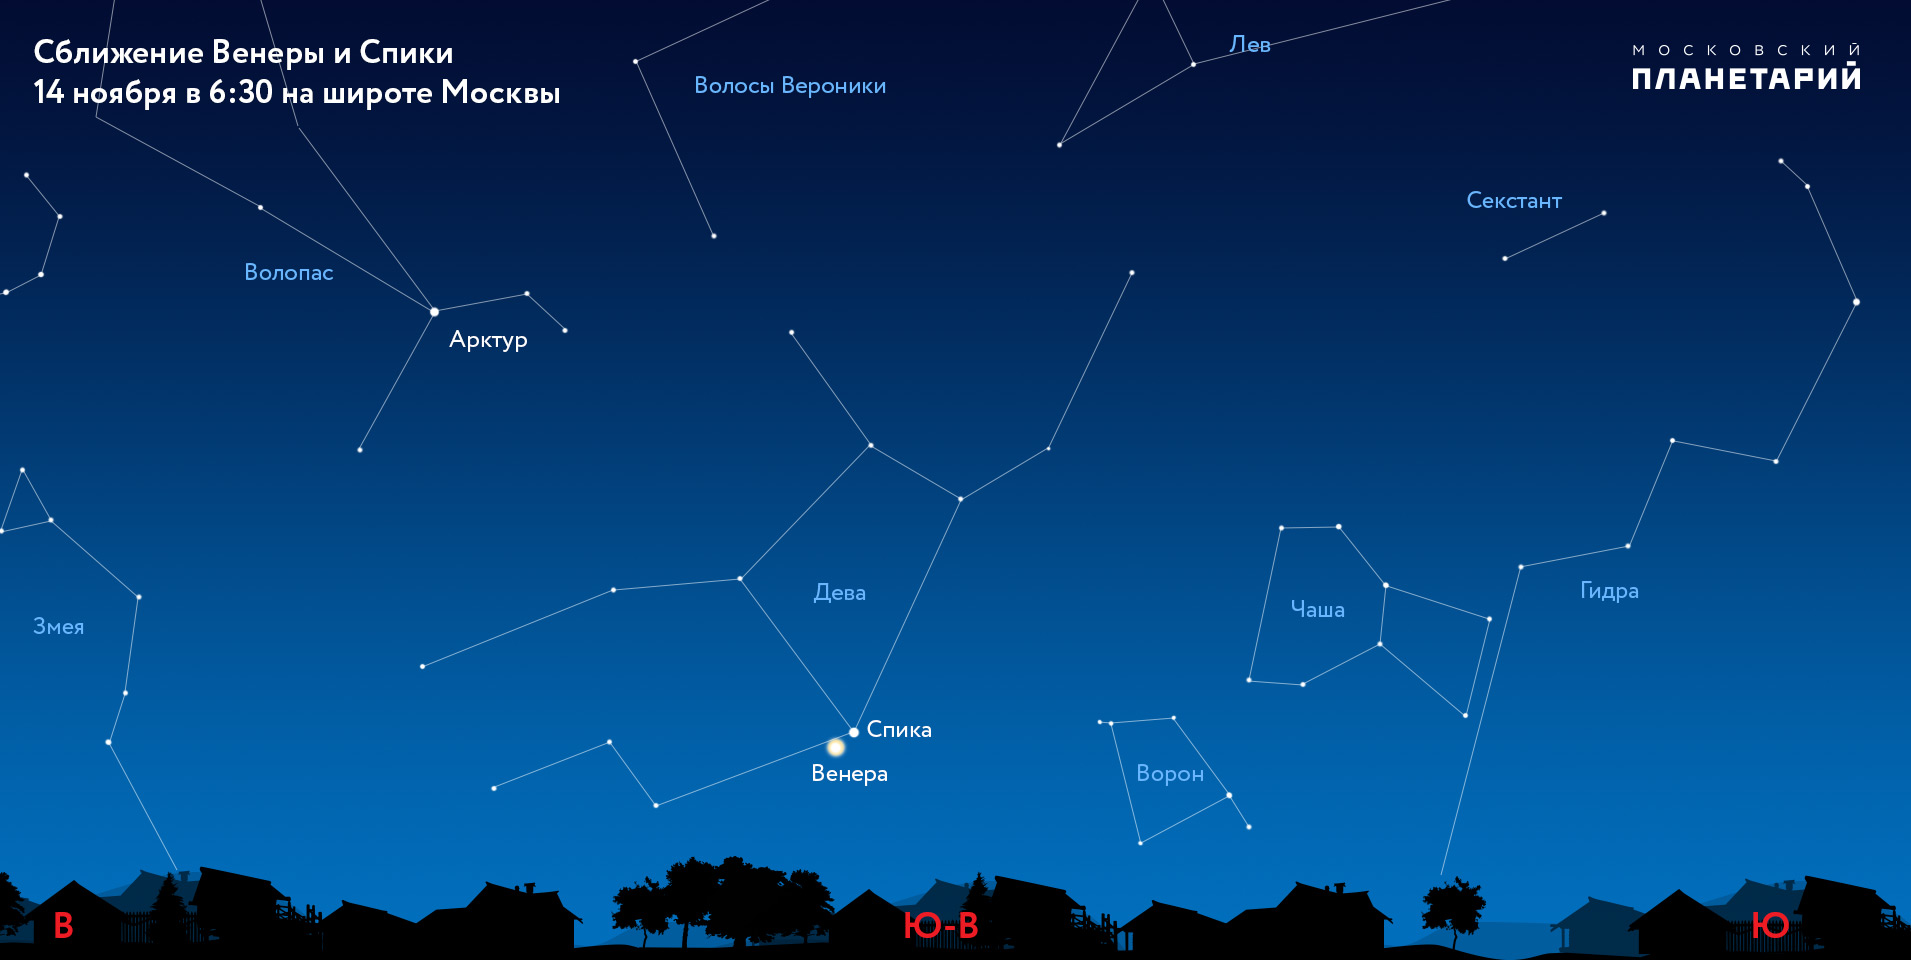 Комета будет видна. Спика звезда в созвездии Девы. Персеиды в августе 2022. Спика (Альфа Девы).